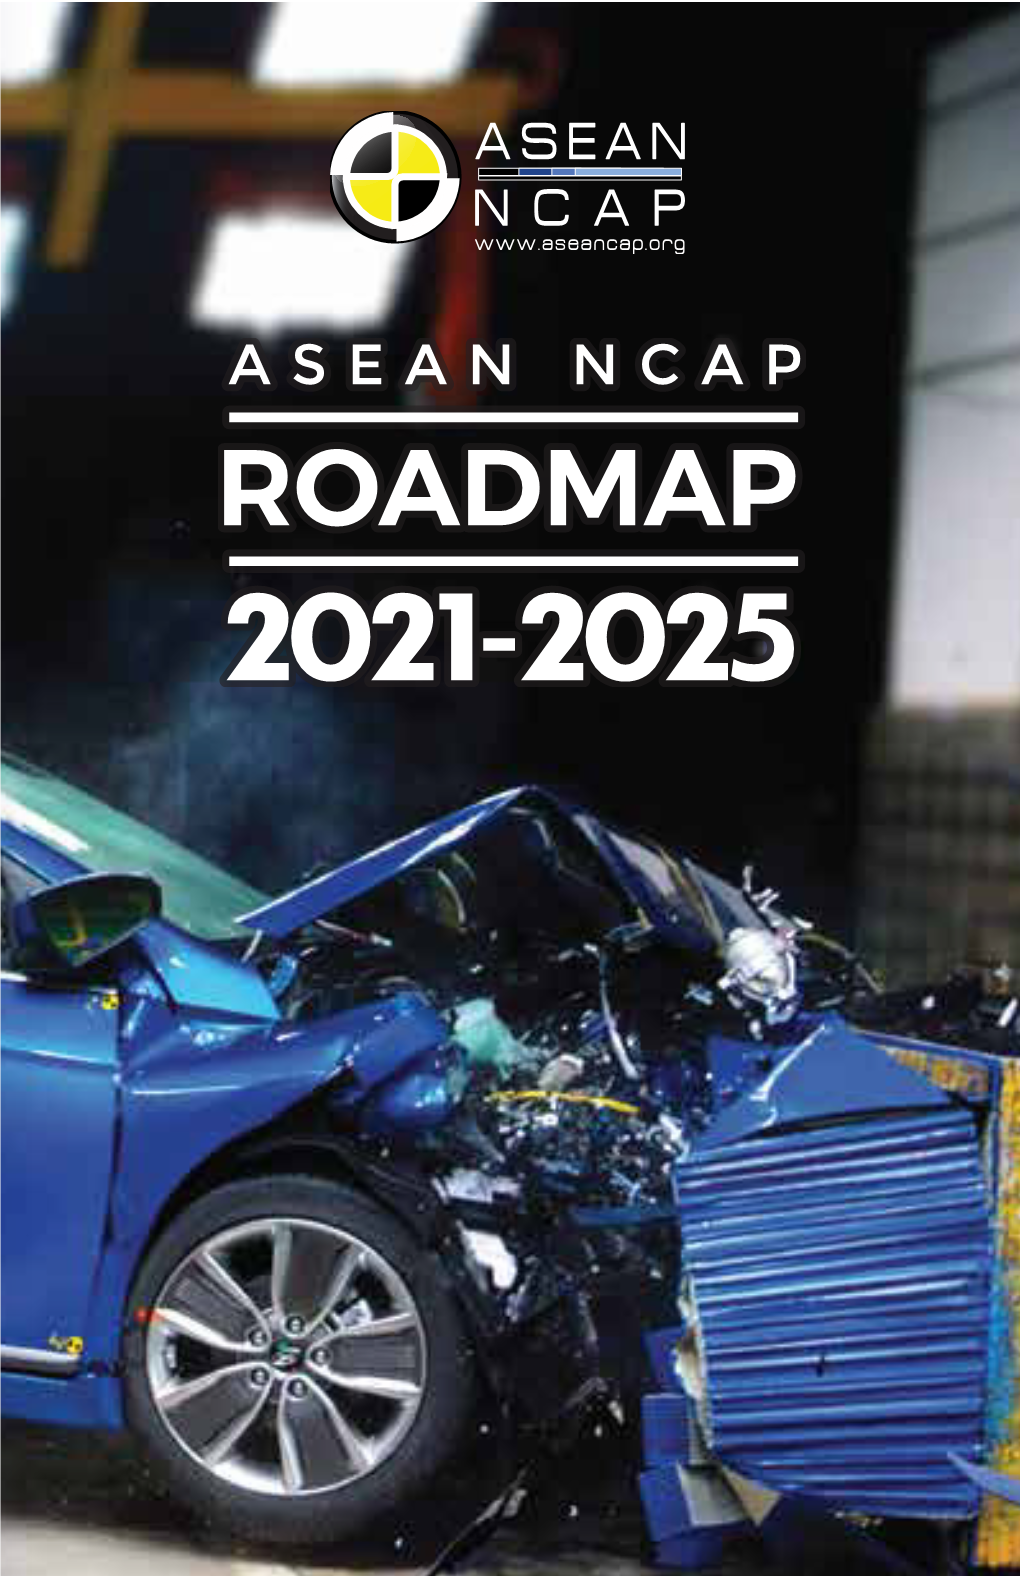 ASEAN NCAP Roadmap 2021-2025